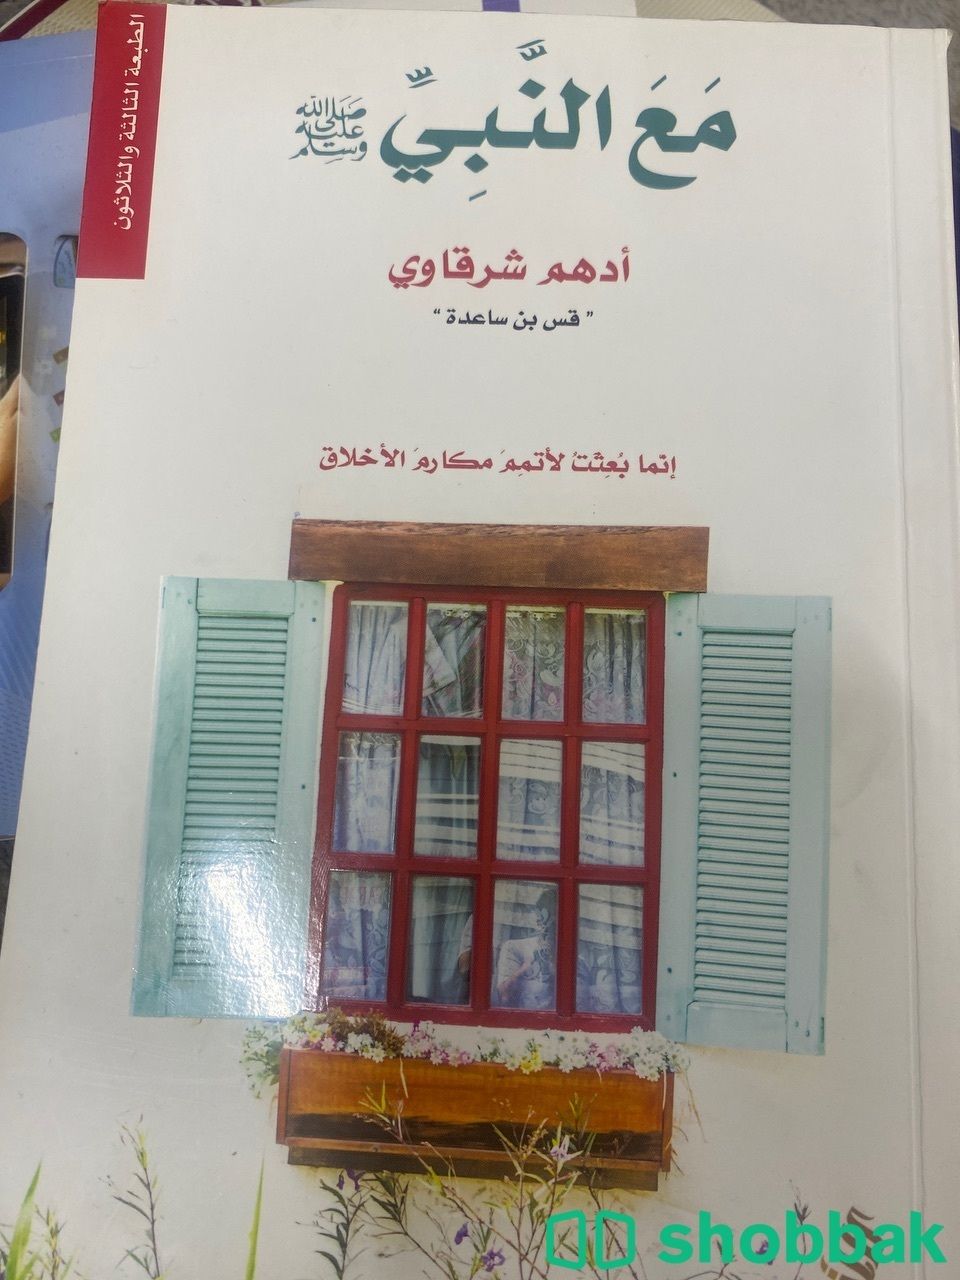 كتاب الرقص مع الحياه لادهم الشرقاوي  Shobbak Saudi Arabia